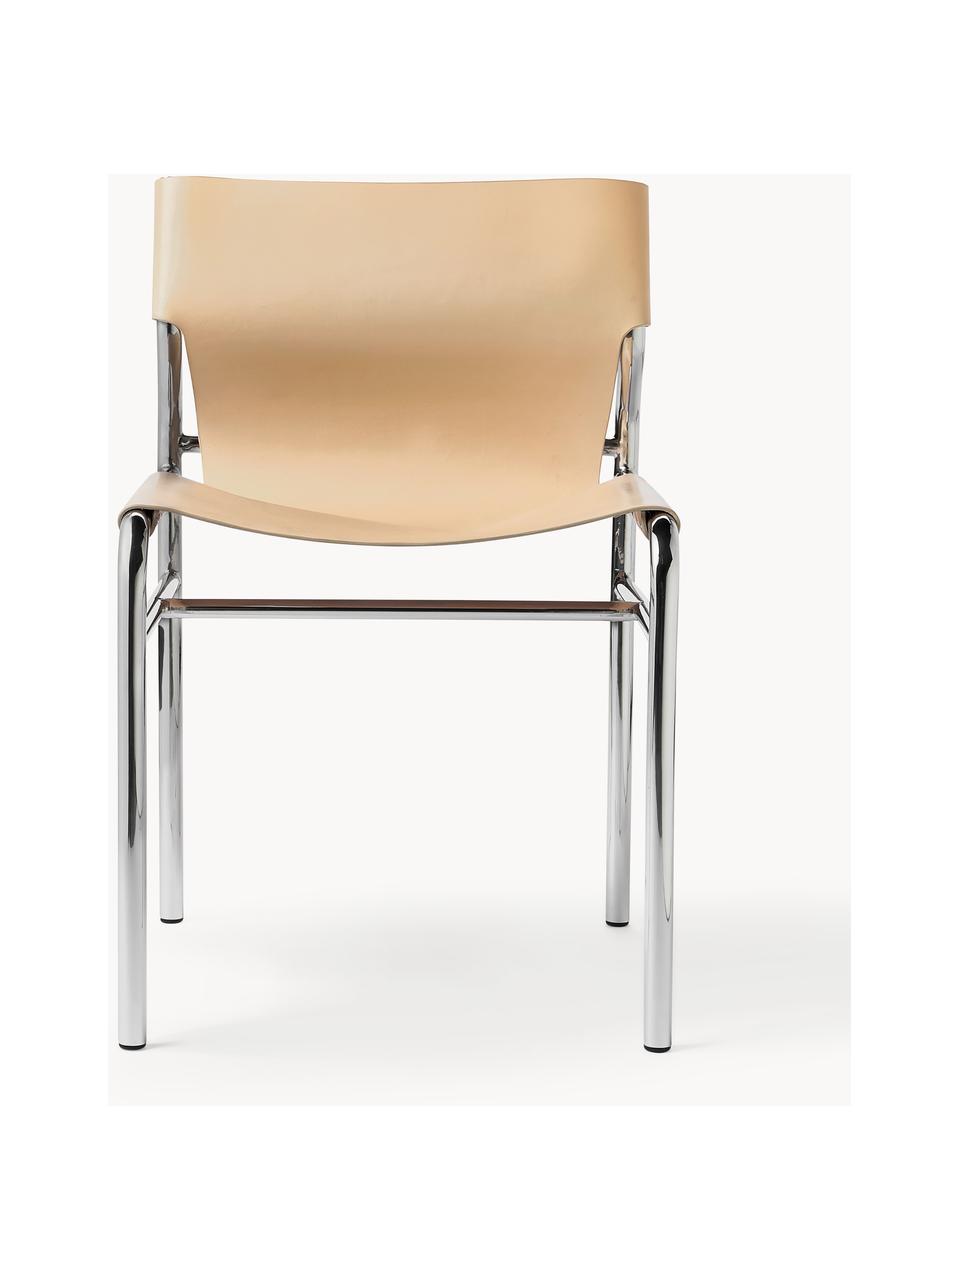 Krzesło ze skóry Haku, Tapicerka: skóra, Nogi: metal, błyszczący, Jasny beżowy, S 50 x G 53 cm